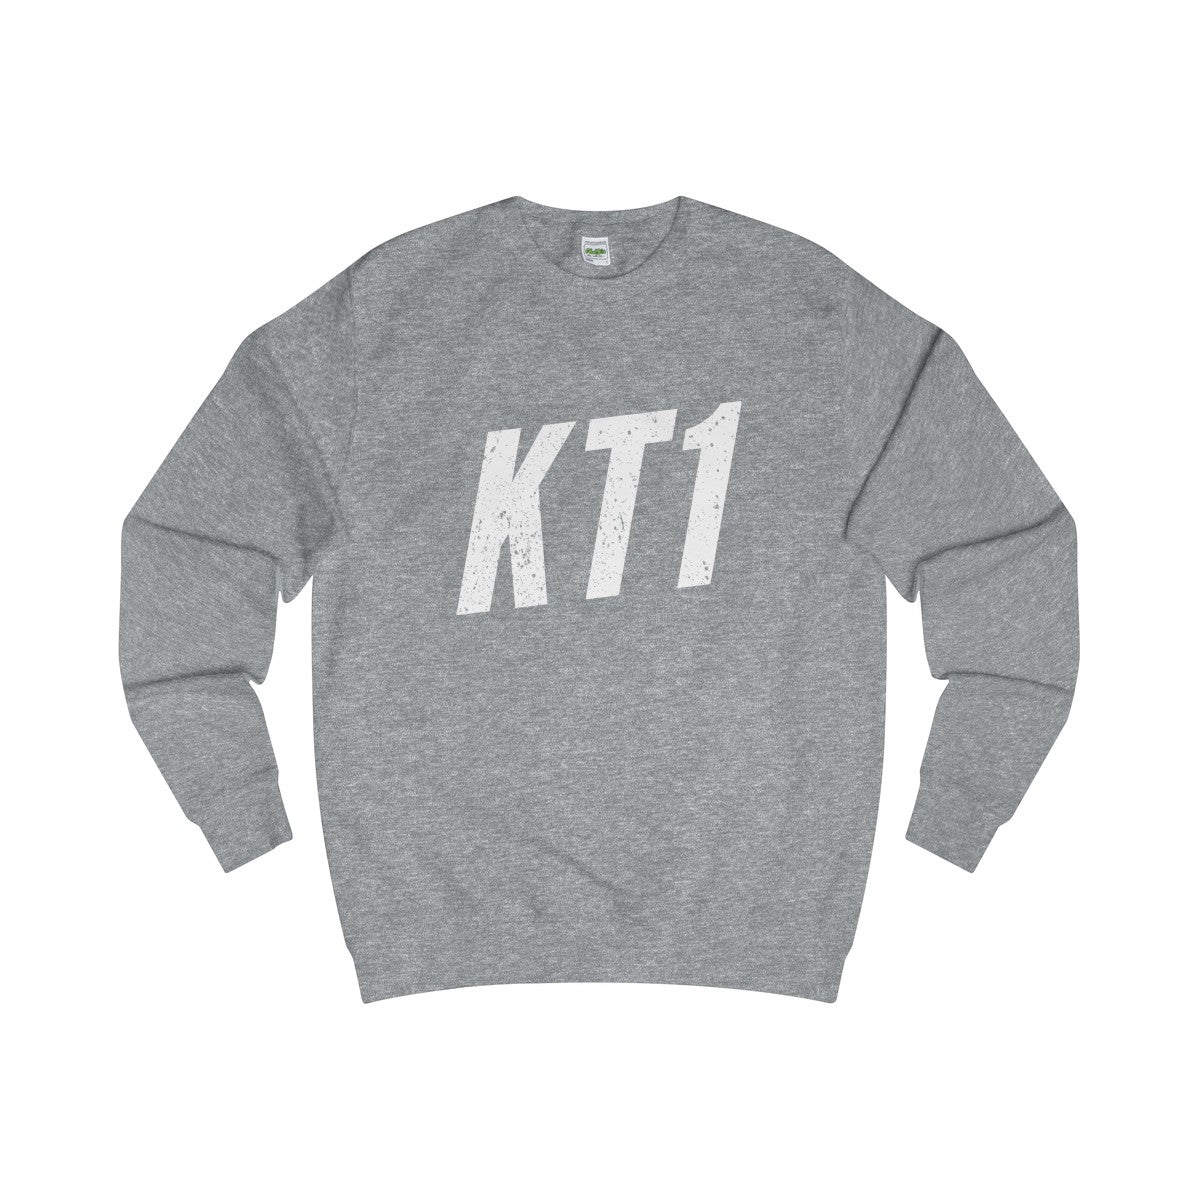 Kingston KT1 Sweater